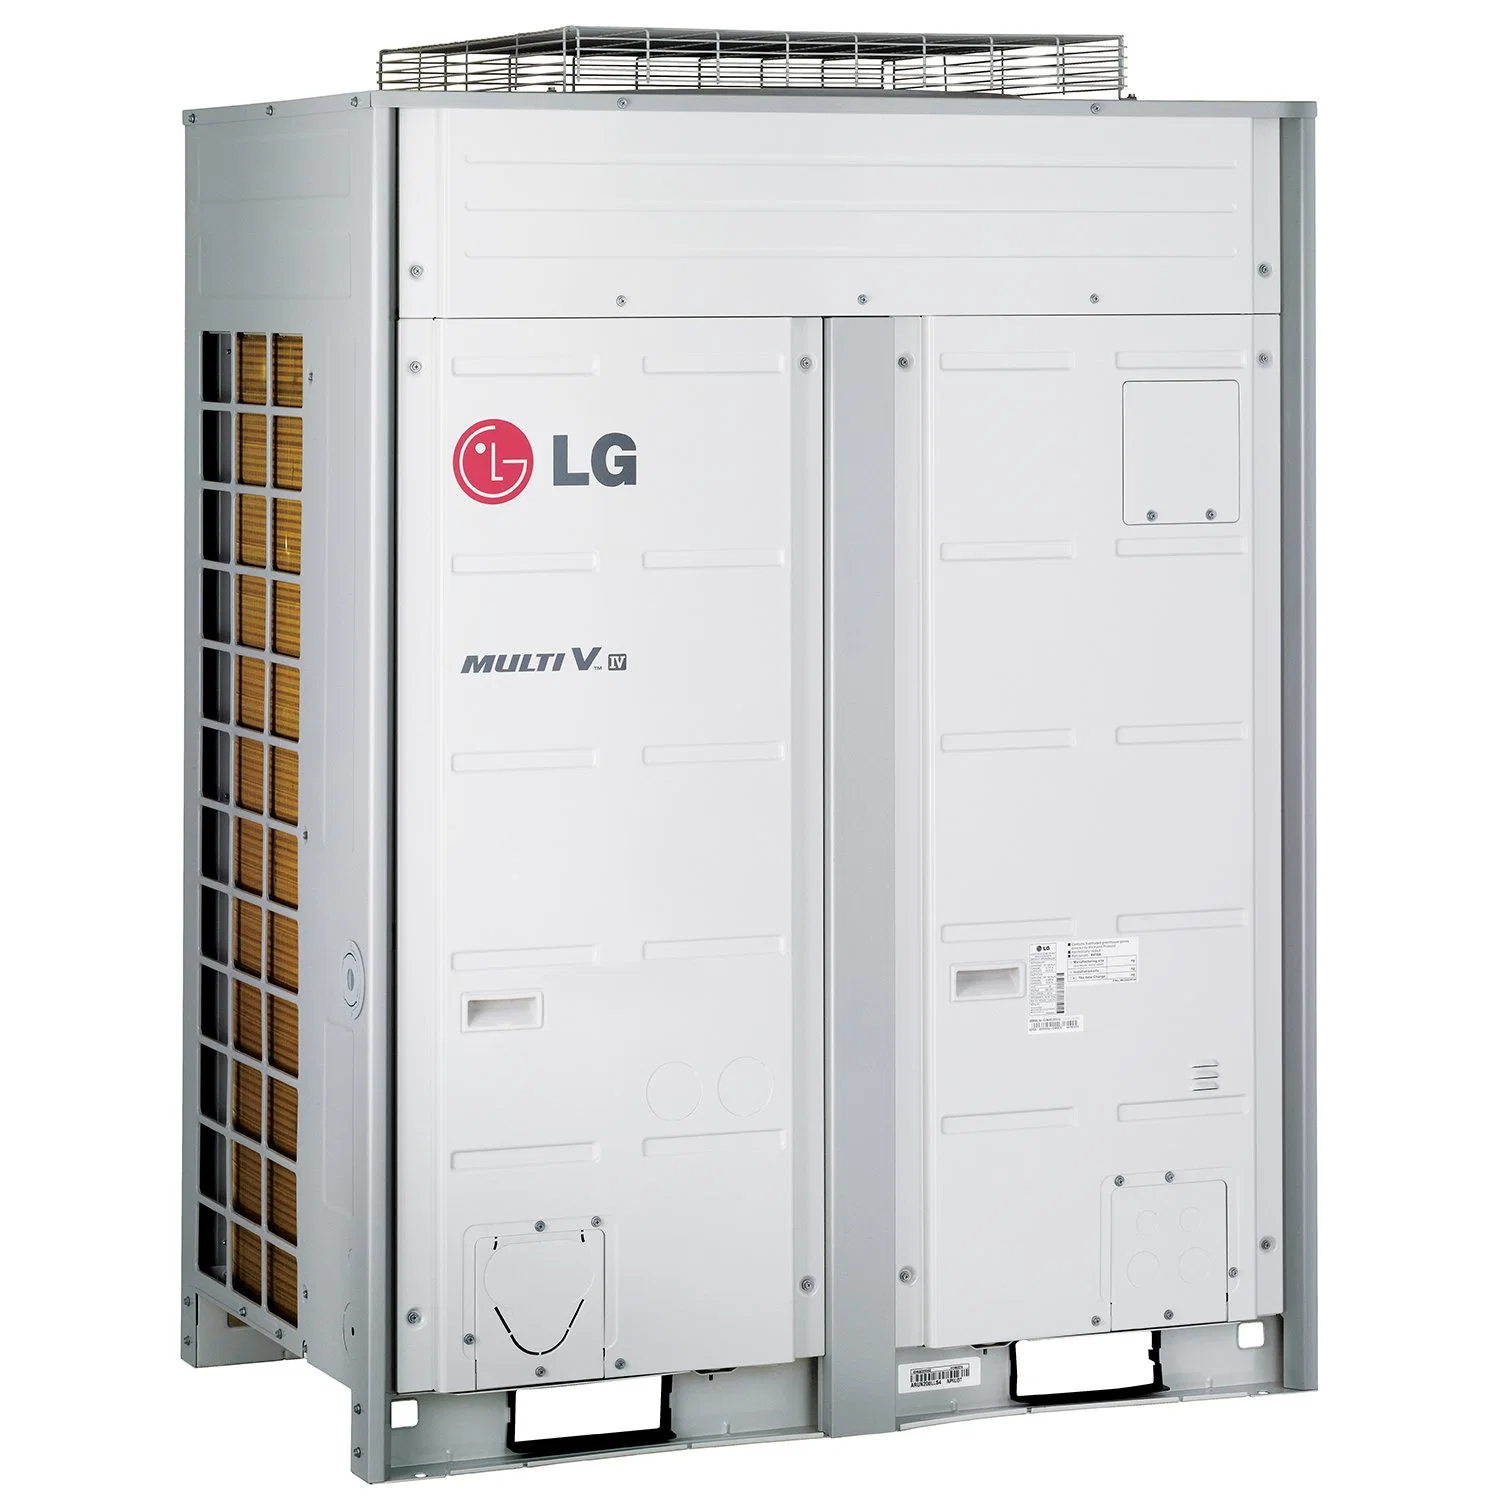 LG climatiseurs industriels Coller de l'air du circuit de refroidissement